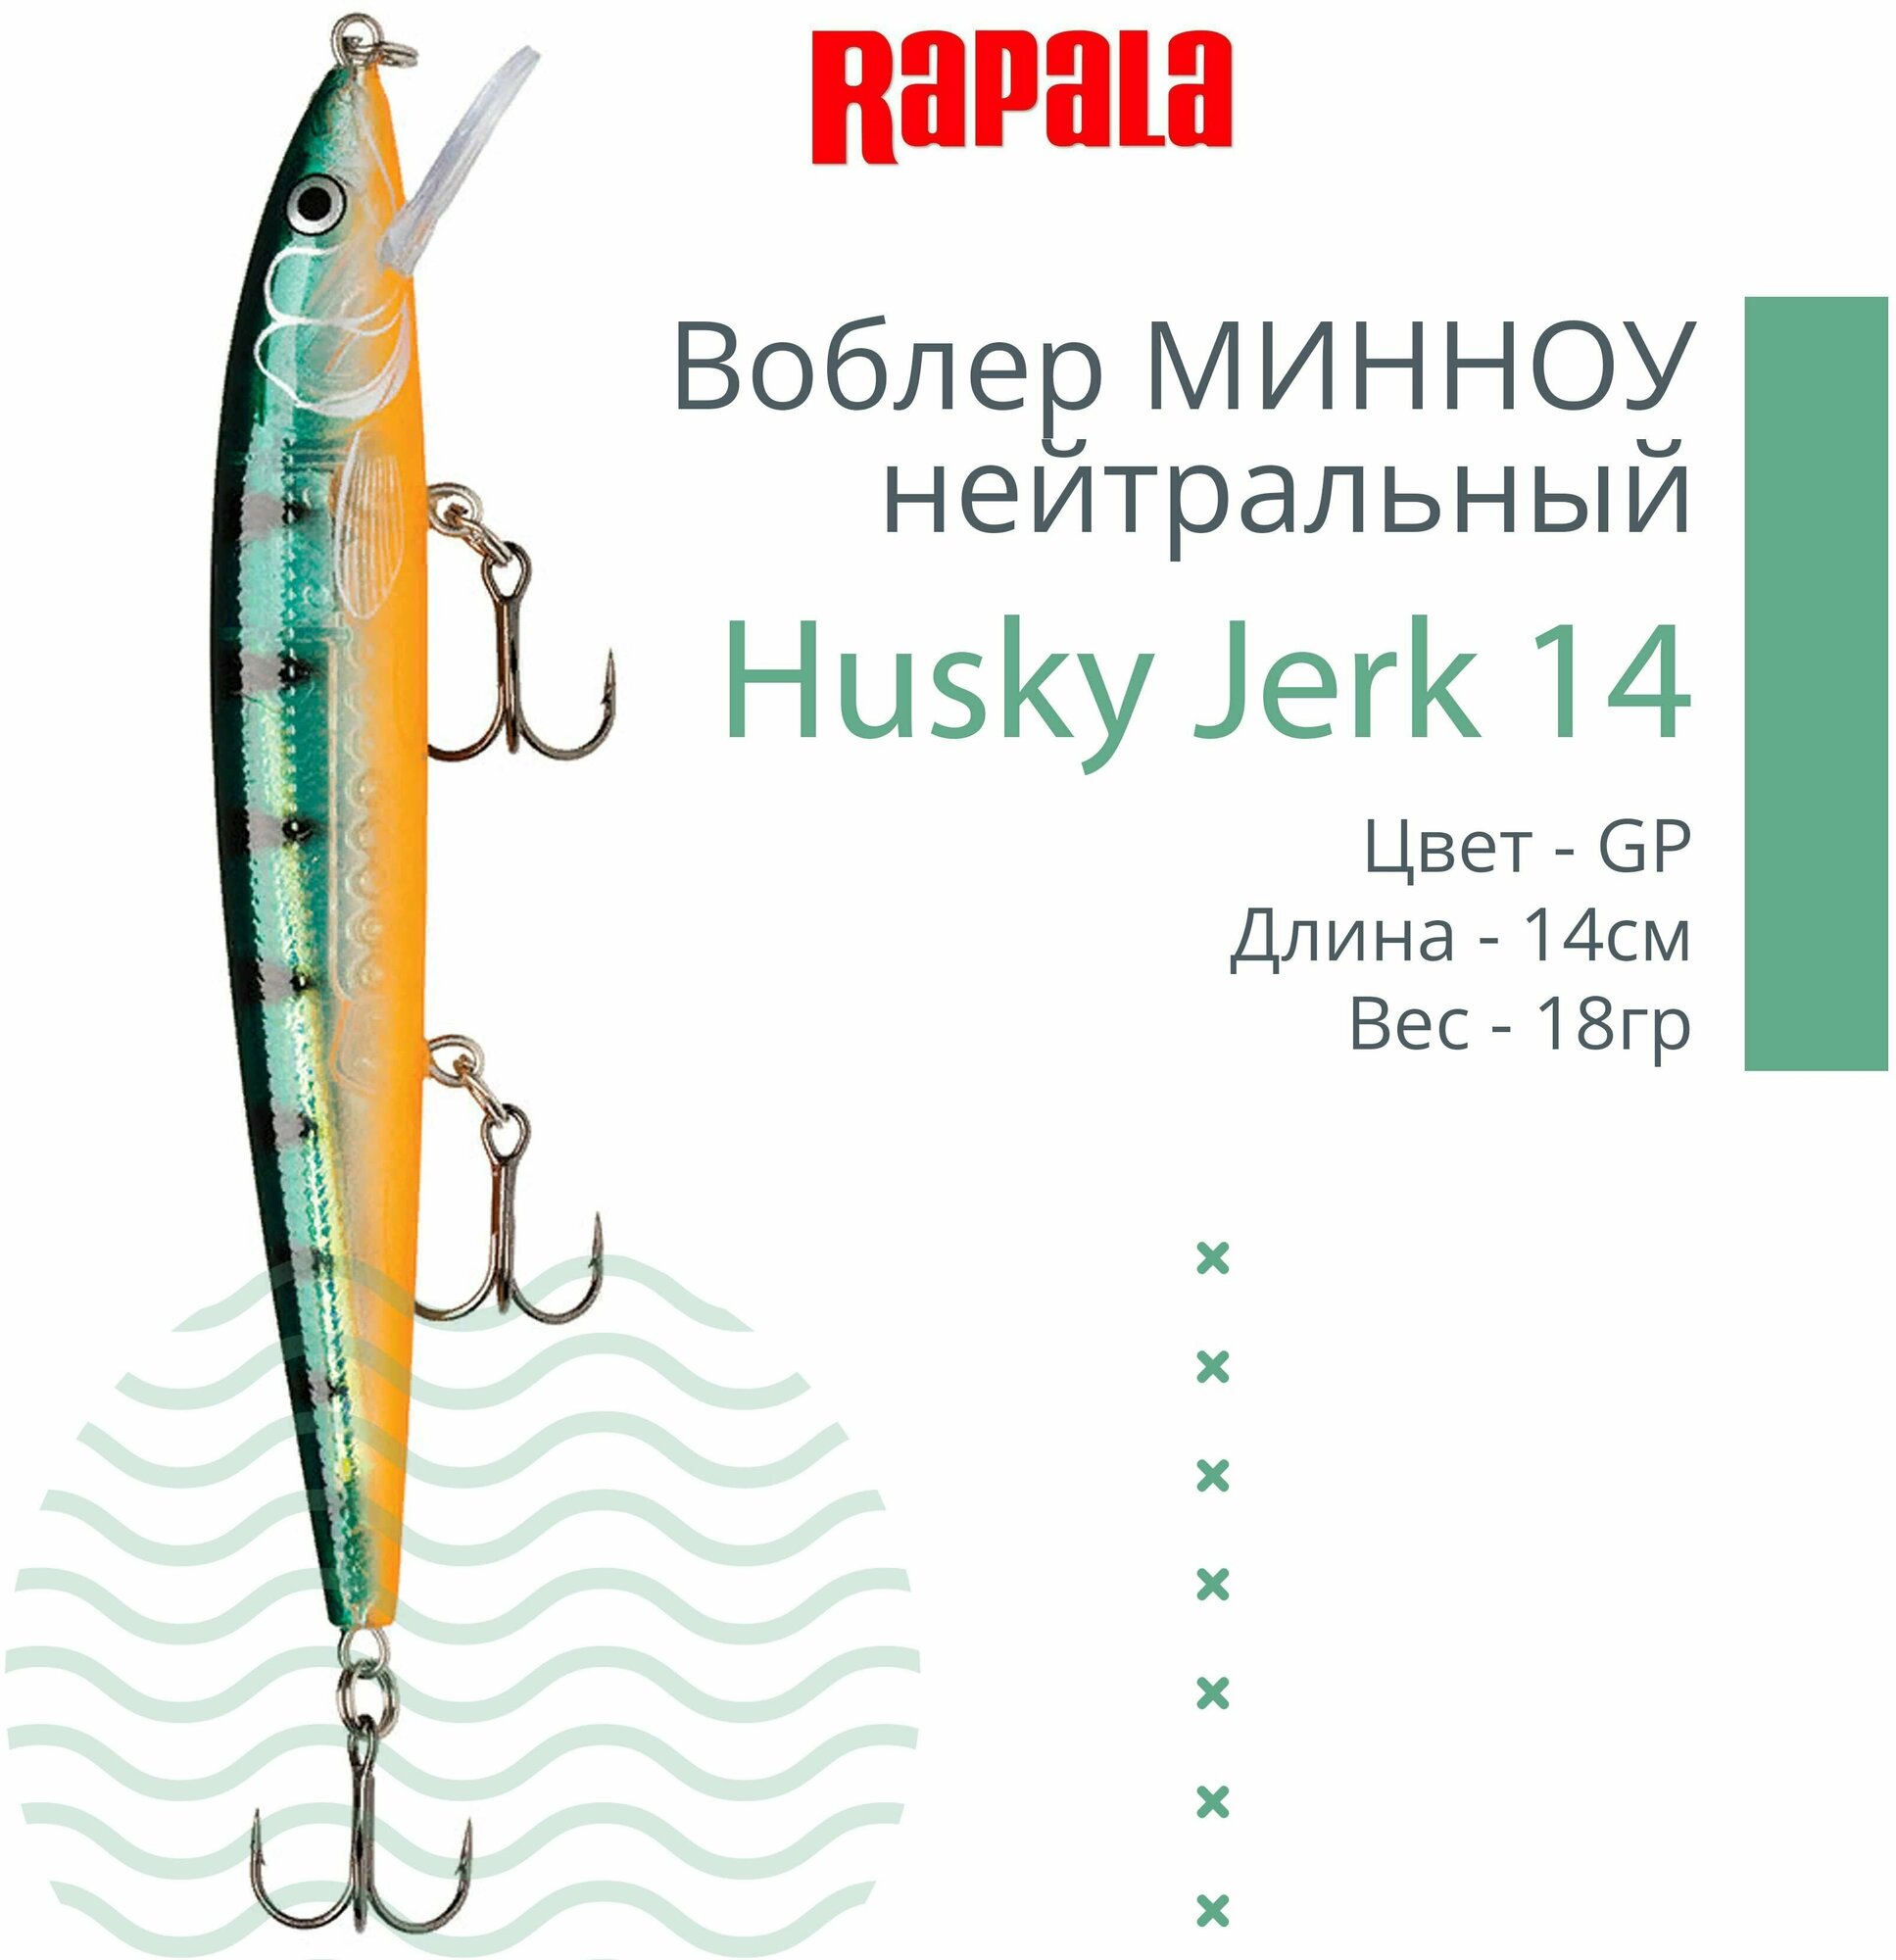 Воблер для рыбалки RAPALA Husky Jerk 14, 14см, 18гр, цвет GP, нейтральный